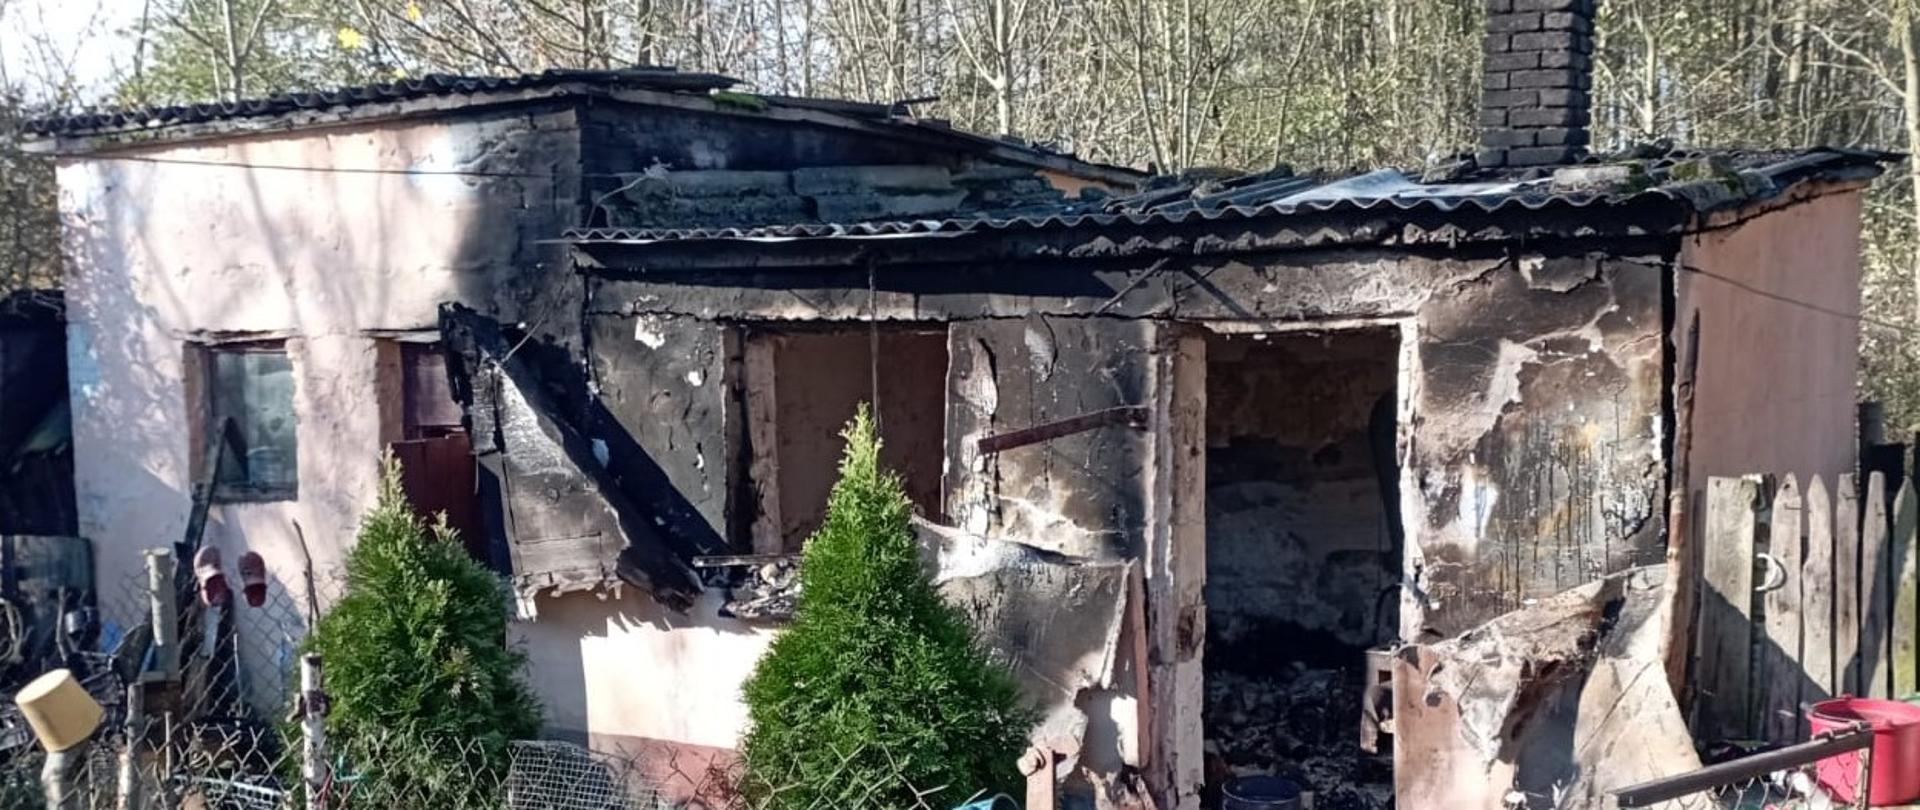 Zdjęcie przedstawia użytkowy budynek gospodarczy, w którym doszło do pożaru. Okno i drzwi się spaliły, widać okopcenia całego obiektu.